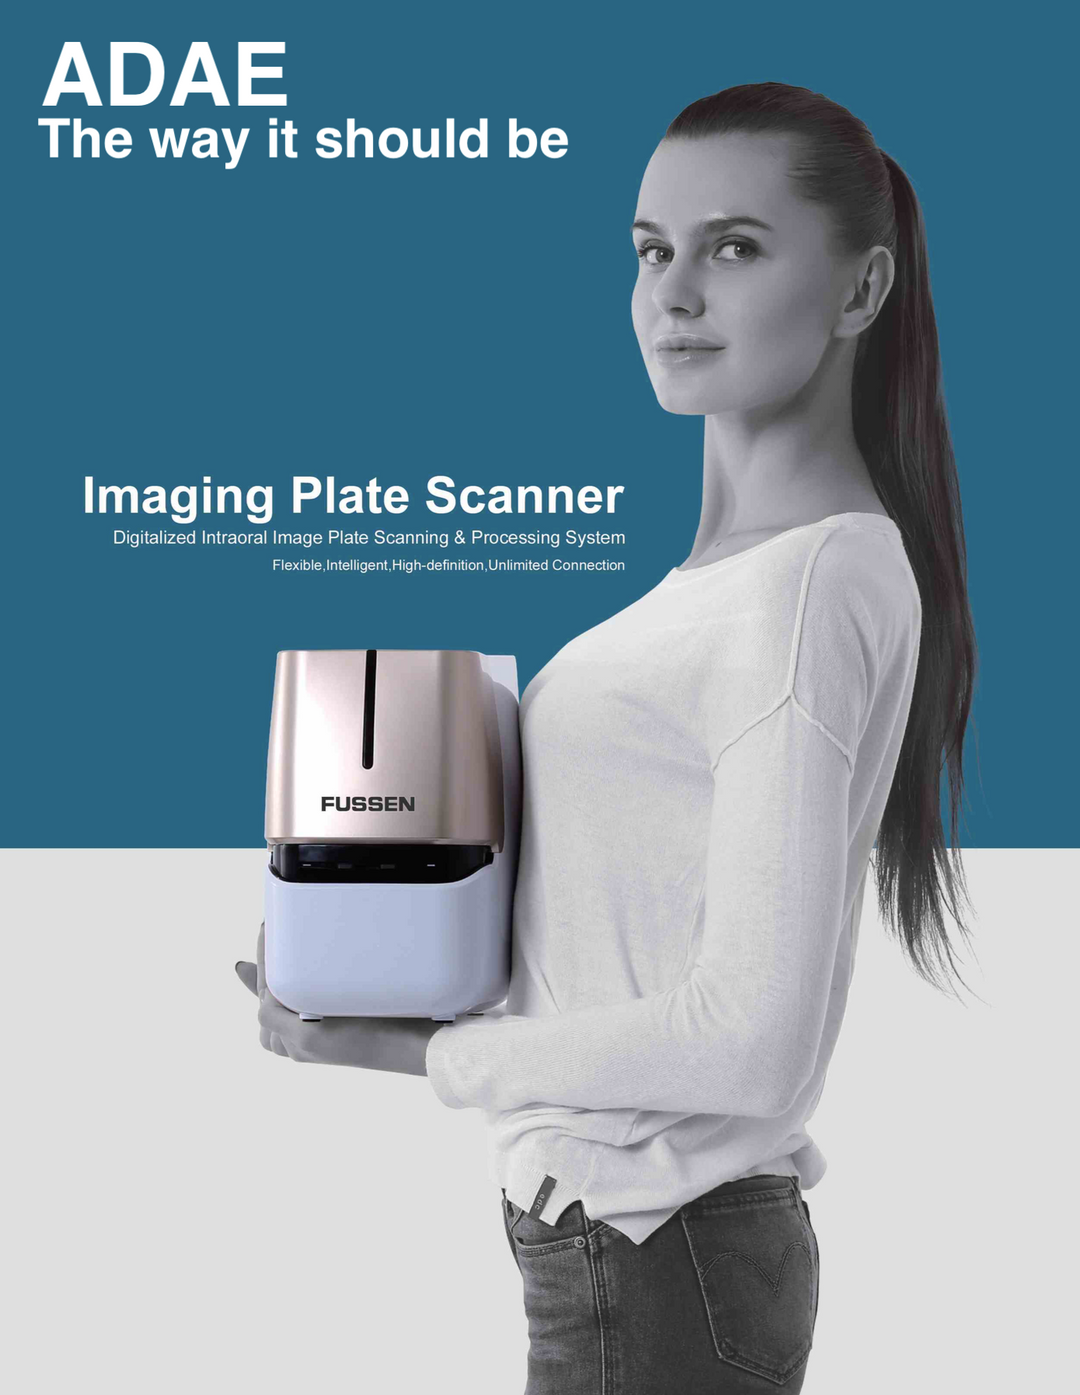 ADAE Fussen dental imaging plate scanner - ADAE Dental Online Store